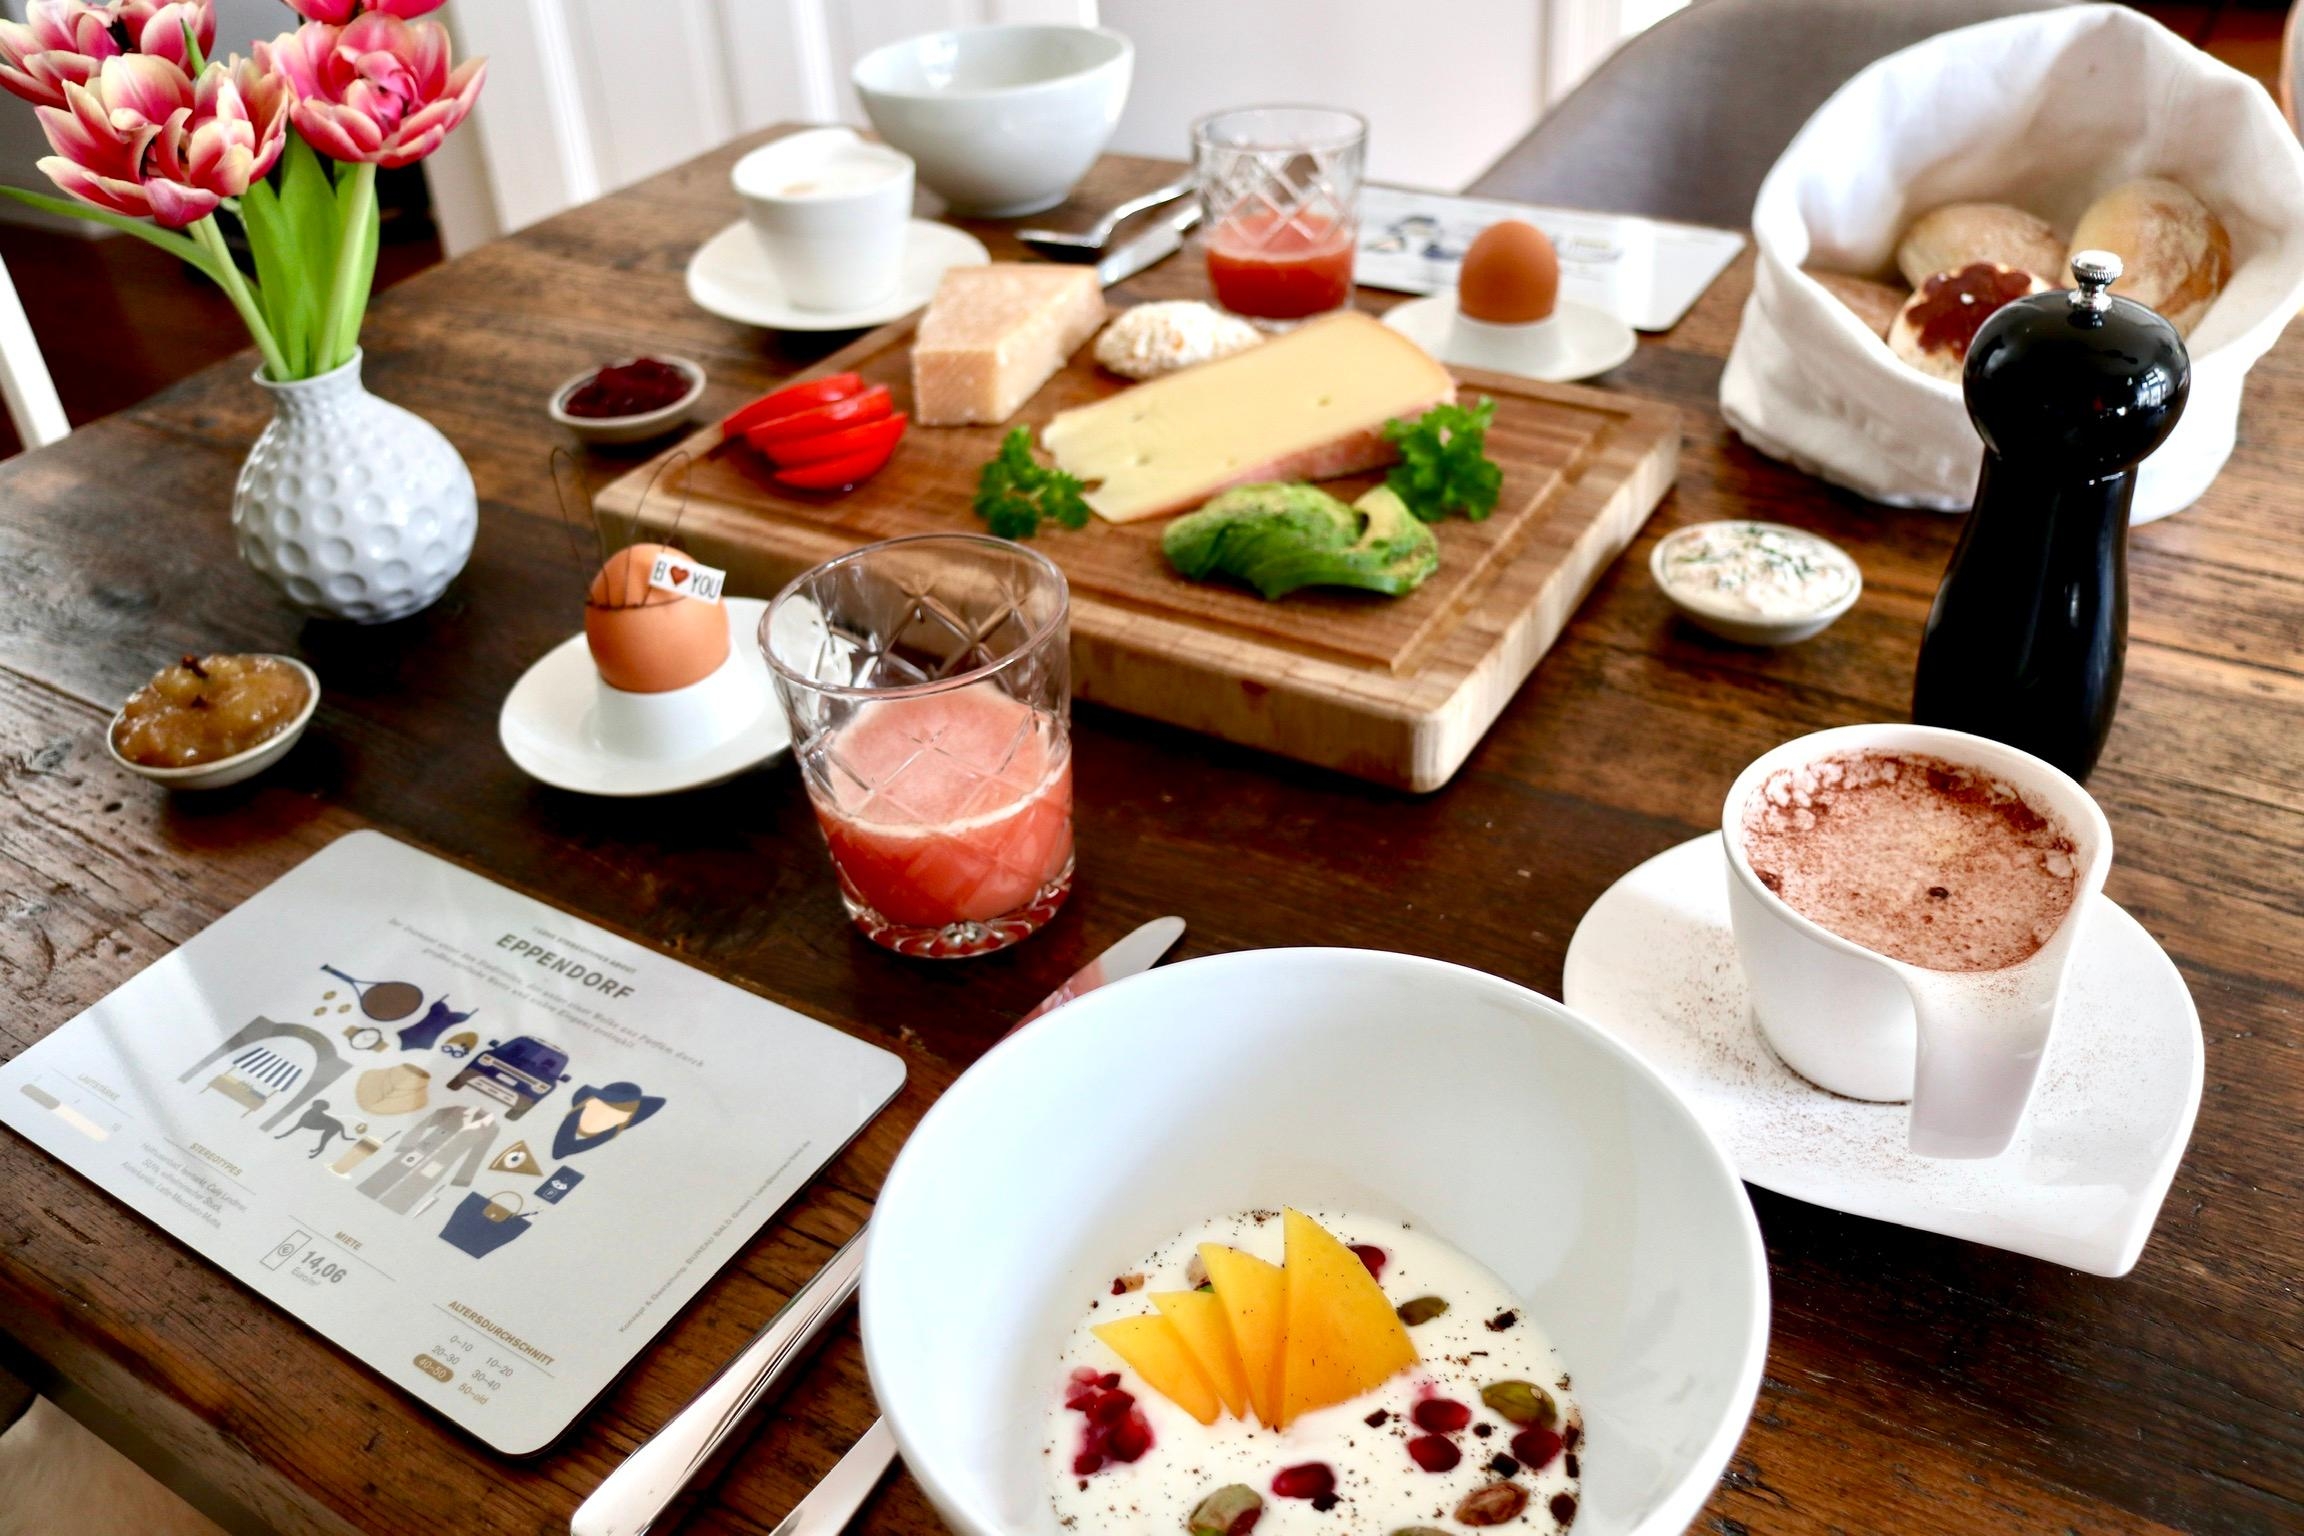 Zugegeben - so sieht unser #frühstückstisch nicht jeden Tag aus. #livingchallenge